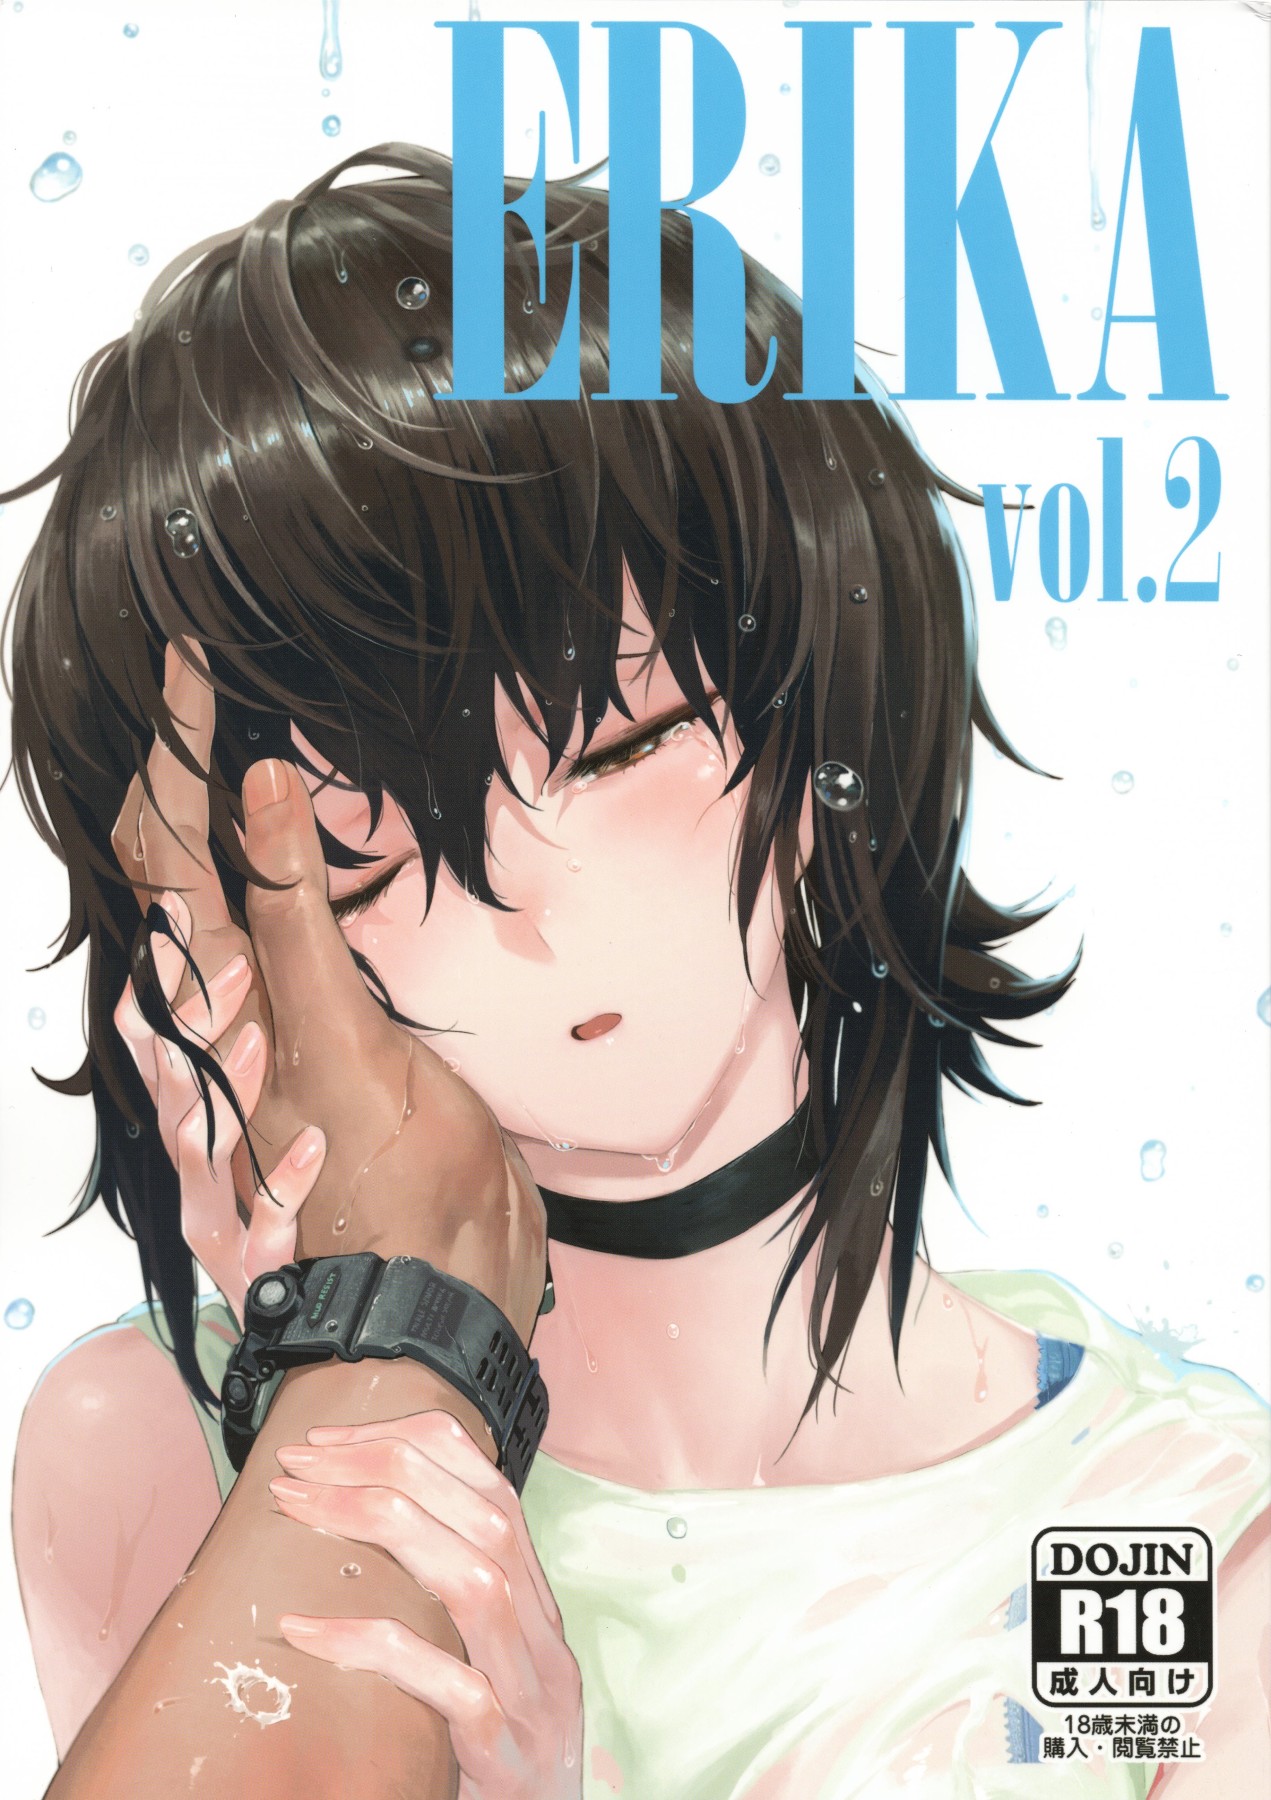 Hentai Manga Comic-ERIKA Vol.2-Read-1